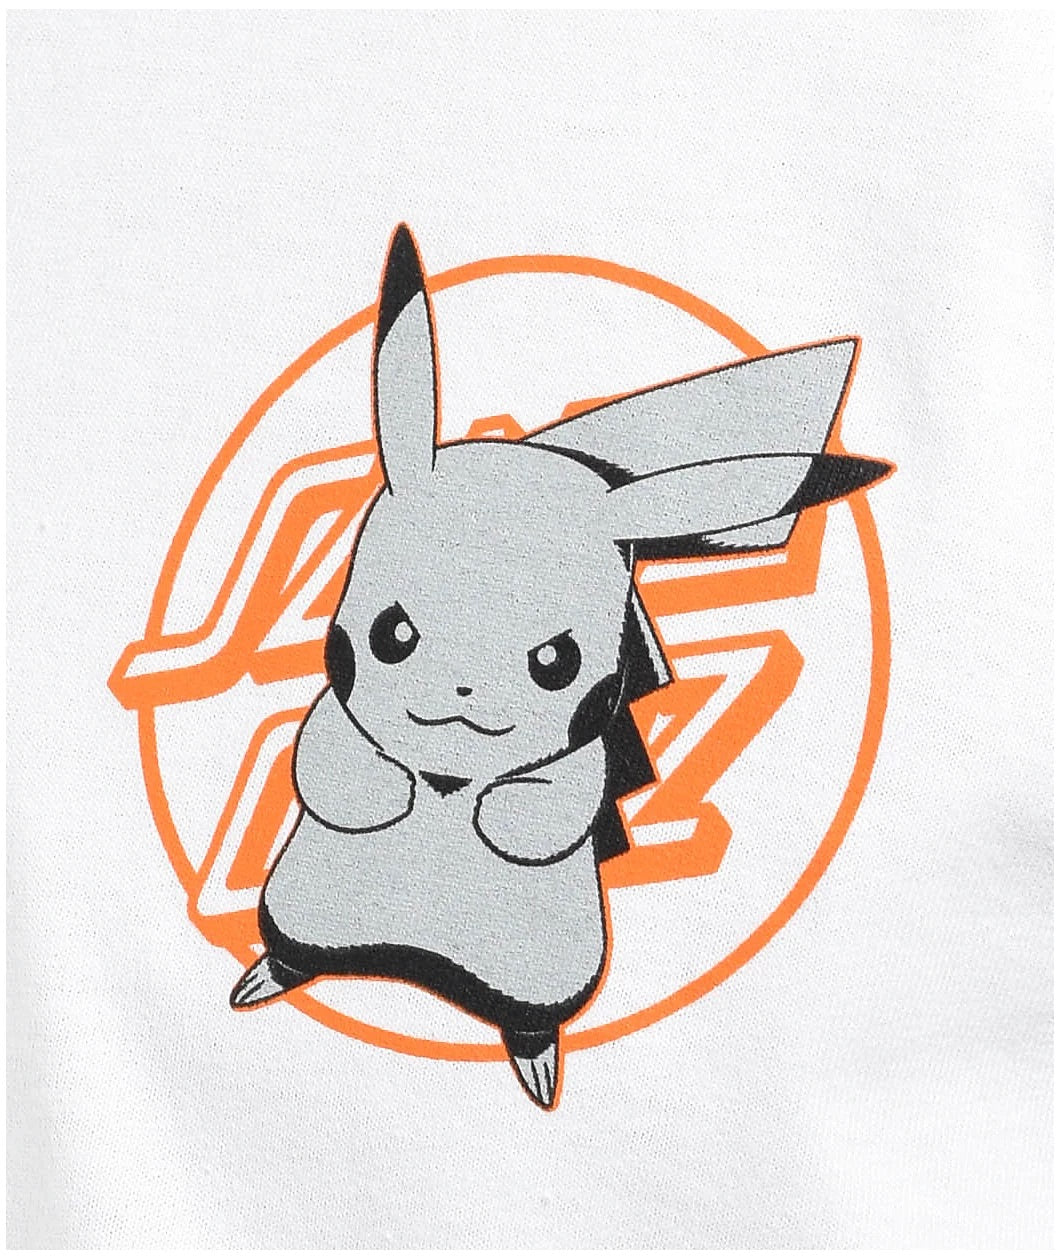 Santa Cruz & Pokémon Pikachu Shirt